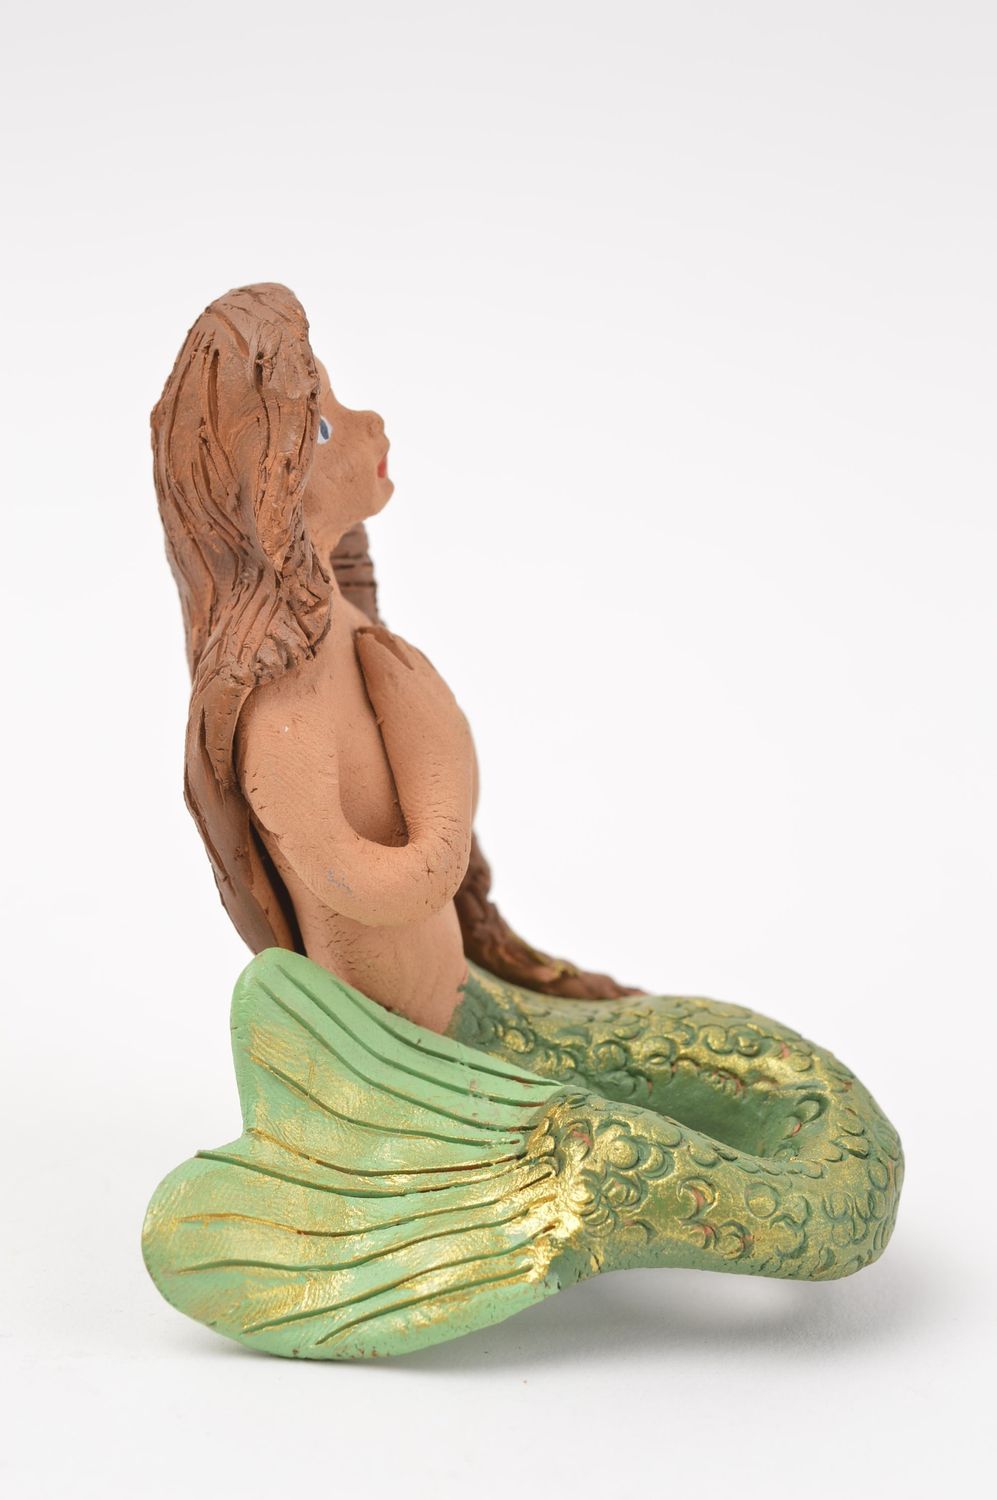 Подарок ручной работы необычная фигурка из глины статуэтка из глины Русалка фото 2